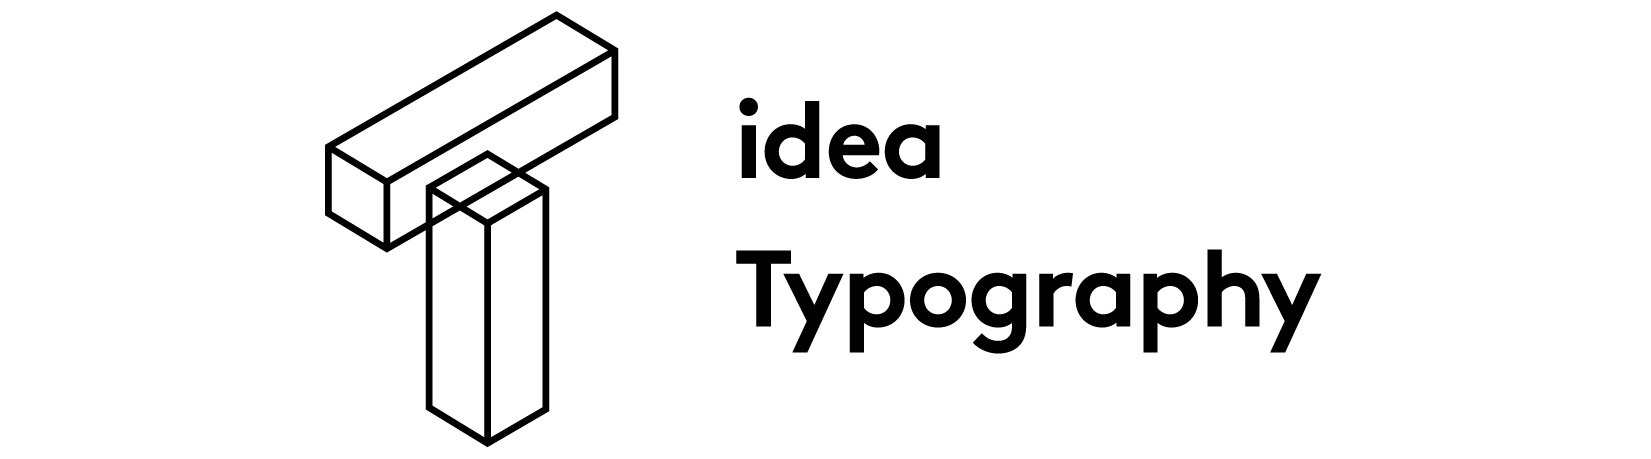 idea_typography